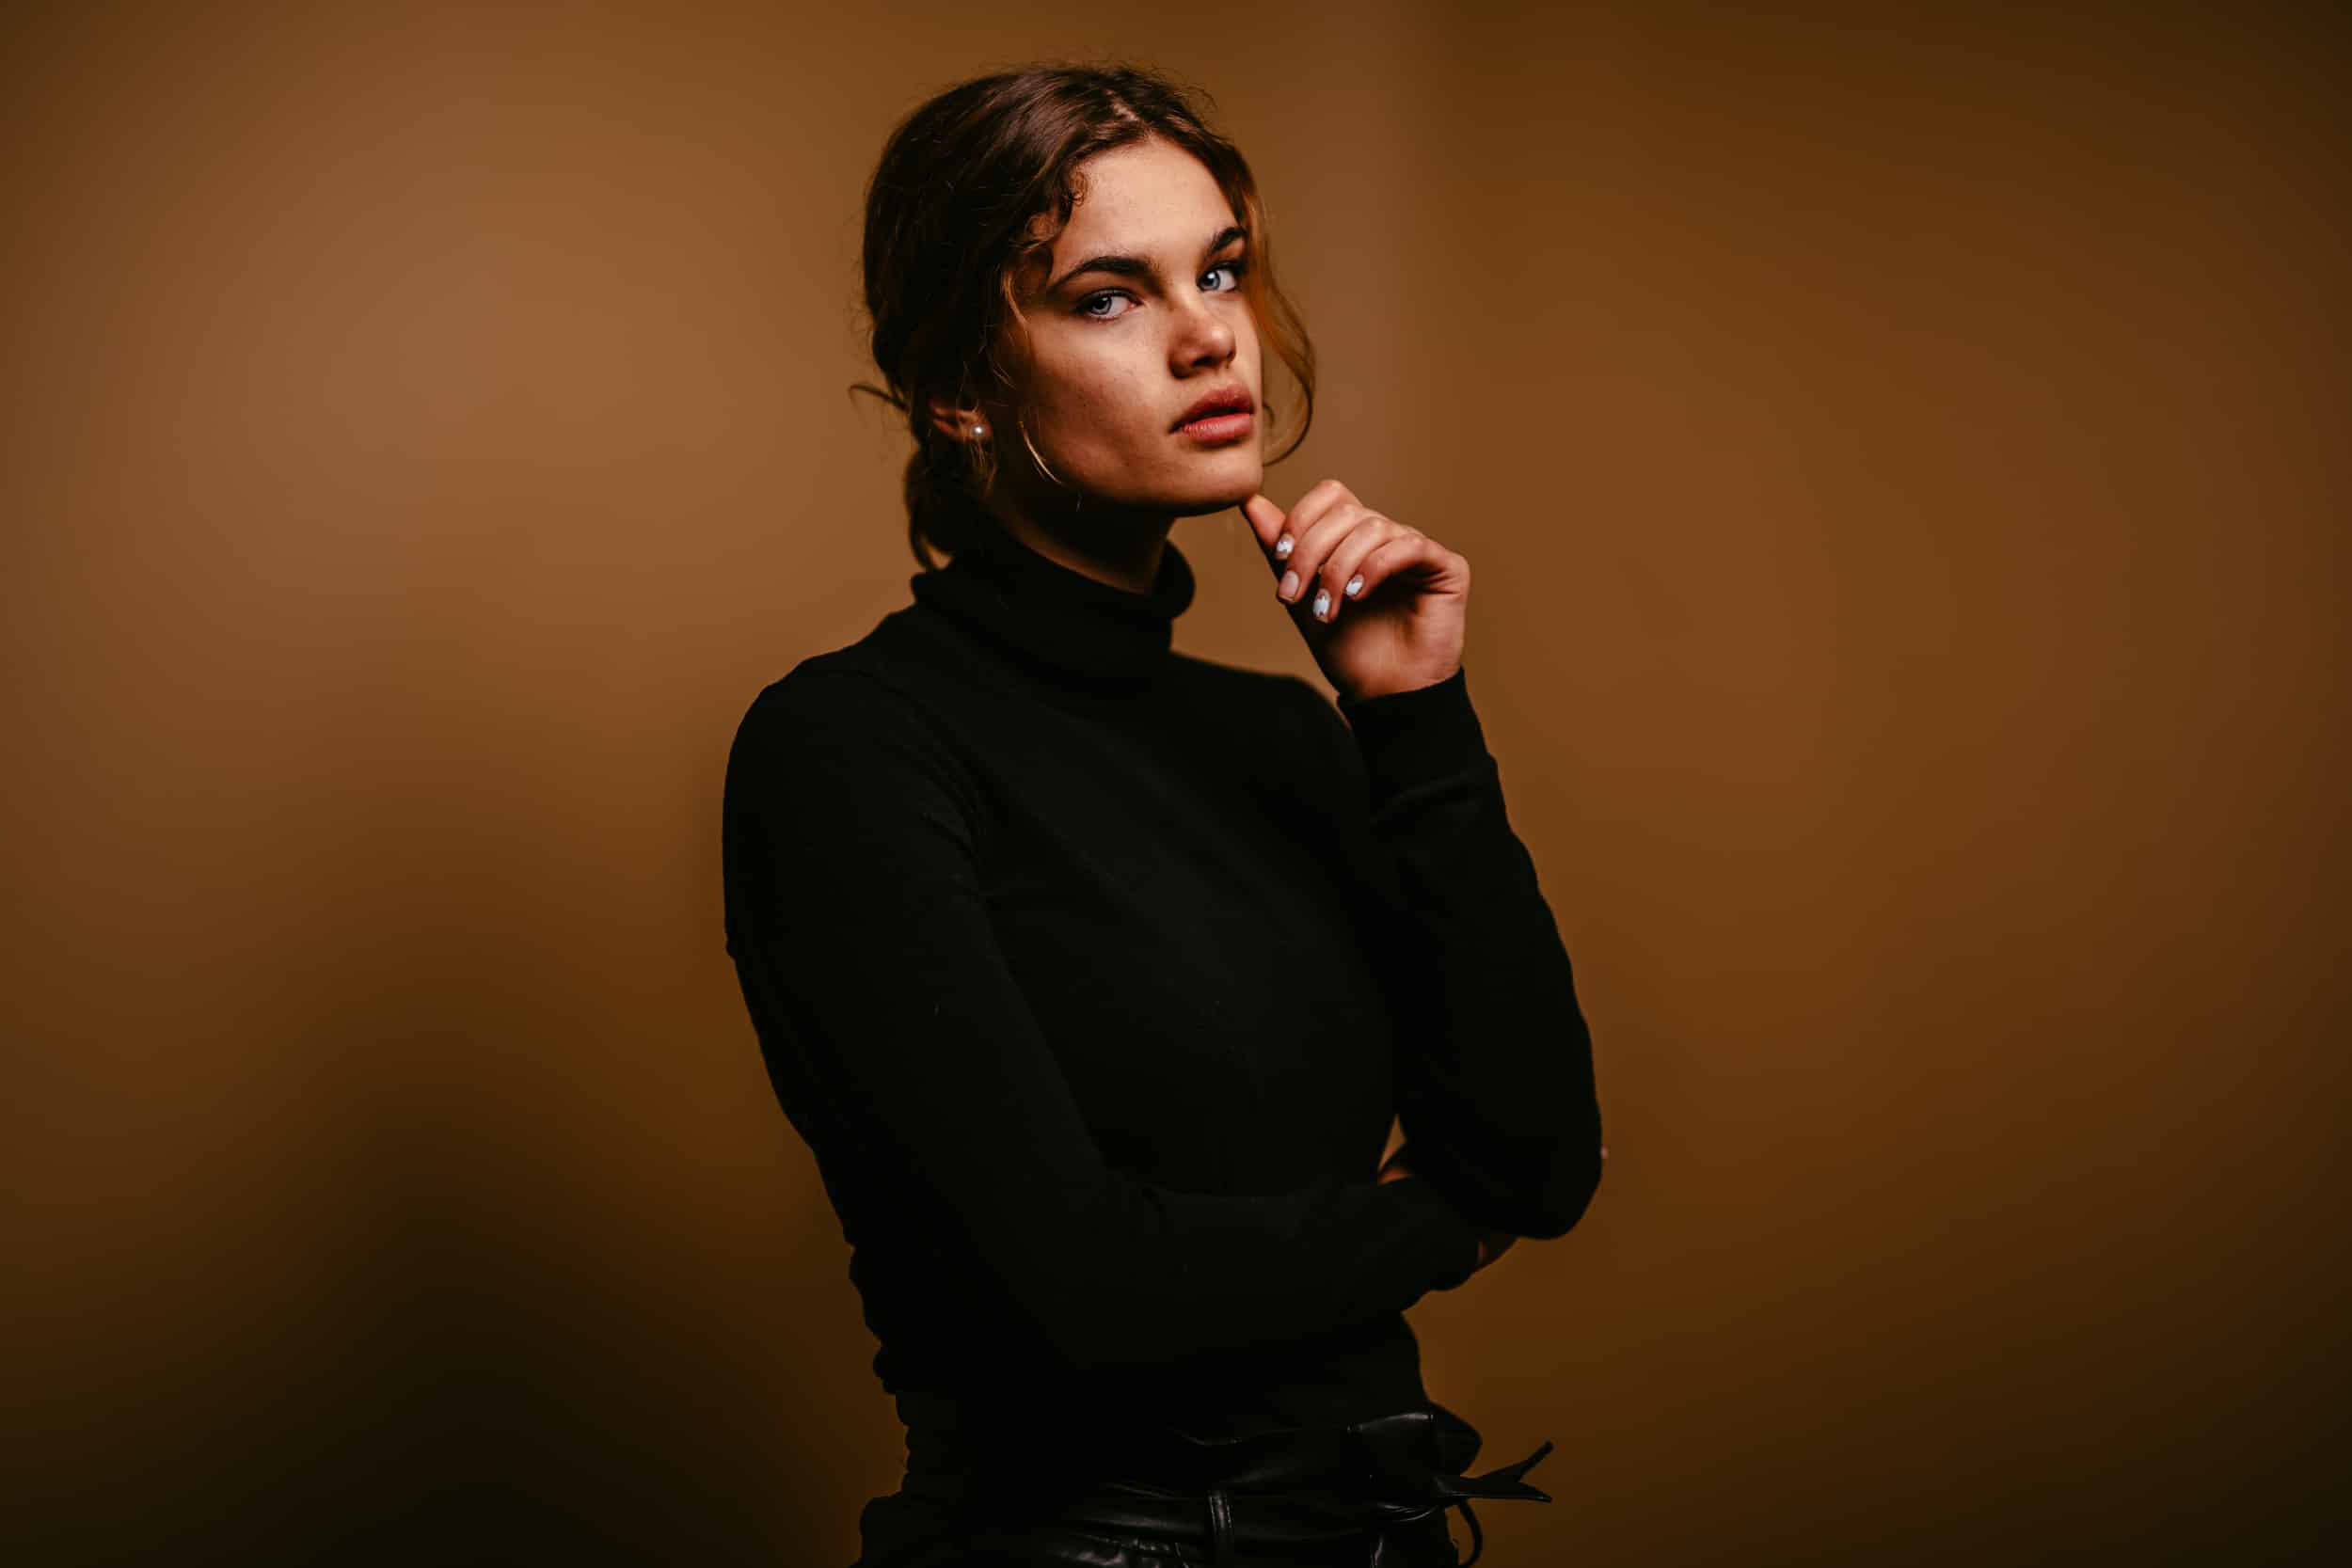 Een jonge vrouw in een zwarte coltrui poseert professionele portretfotograaf met haar hand op haar kin.